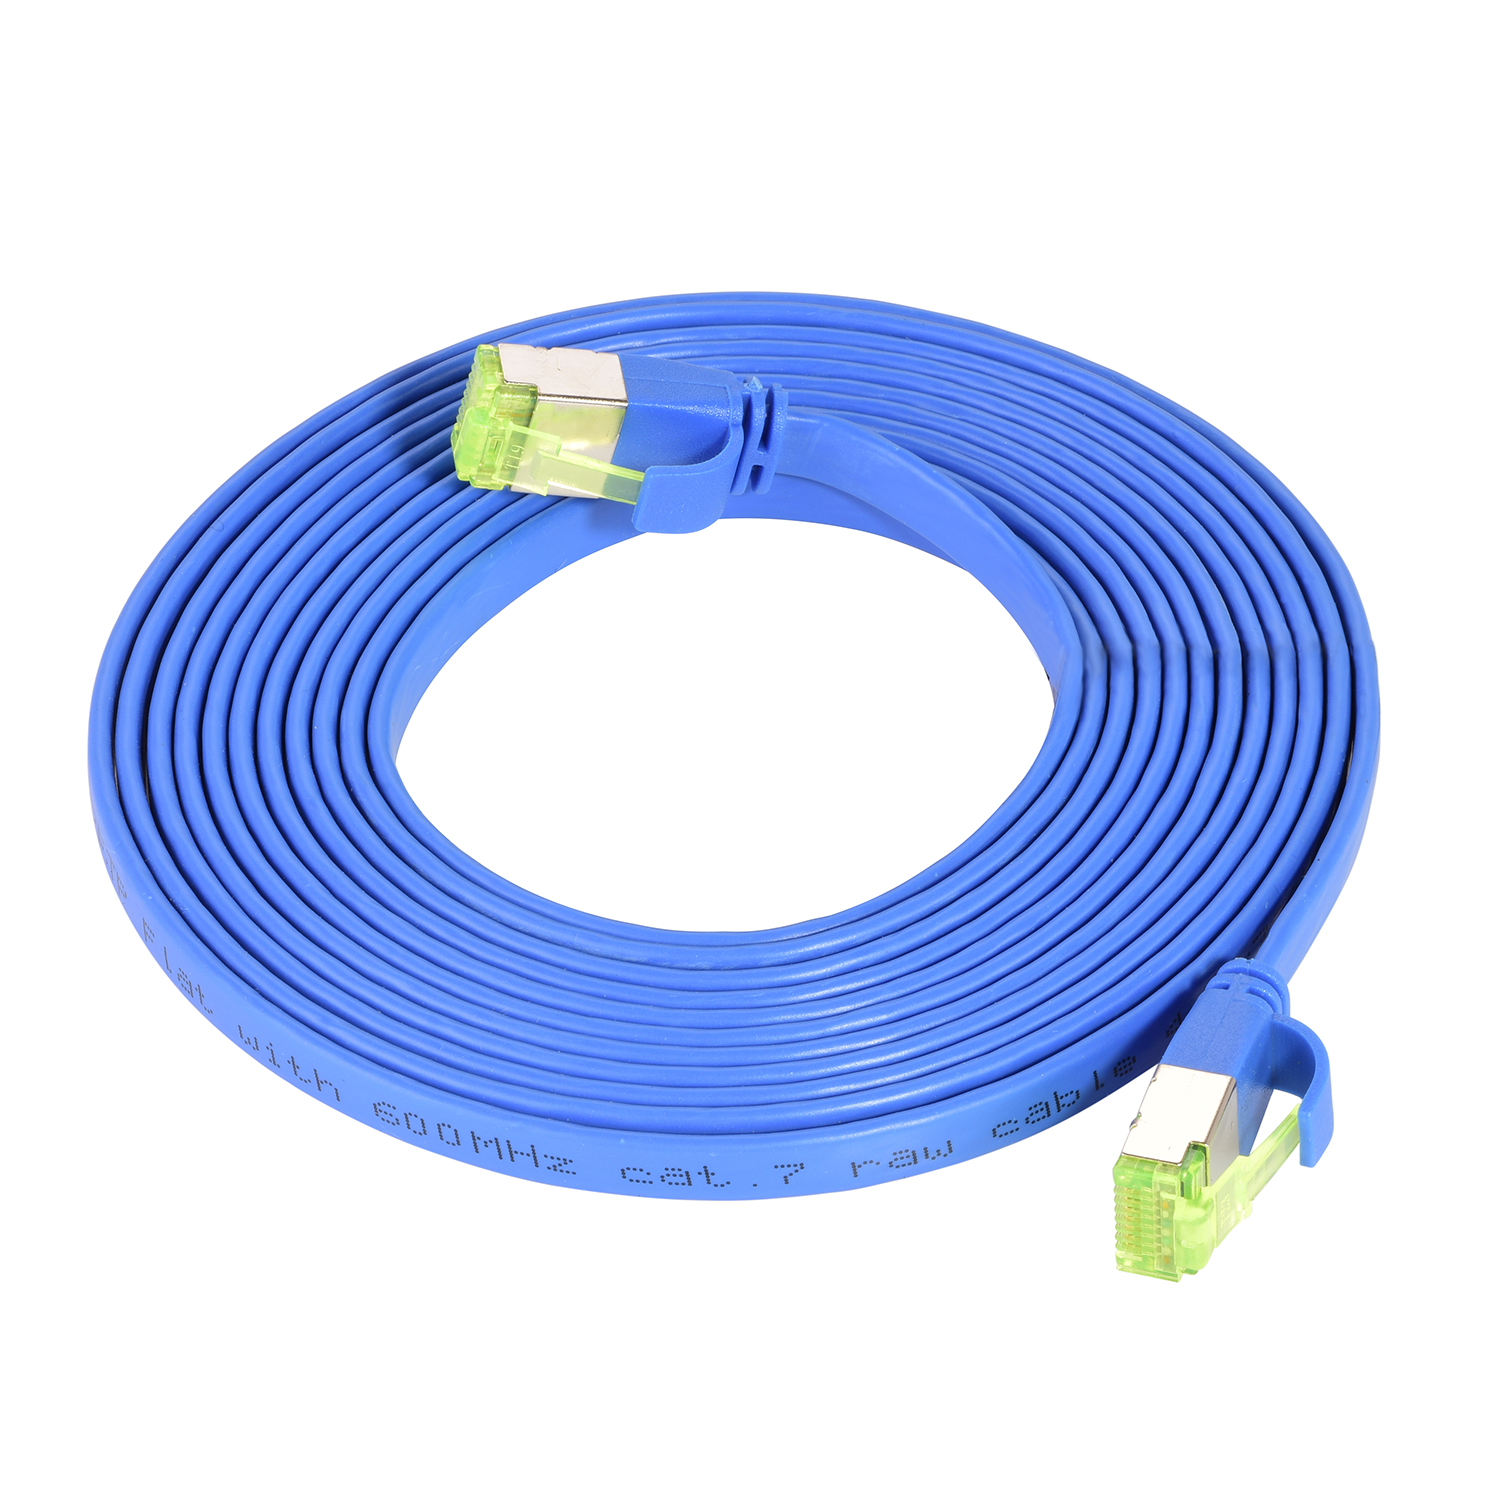 / GBit, 5m m TPFNET 5 Netzwerkkabel, Flachkabel 10 blau, Patchkabel U/FTP